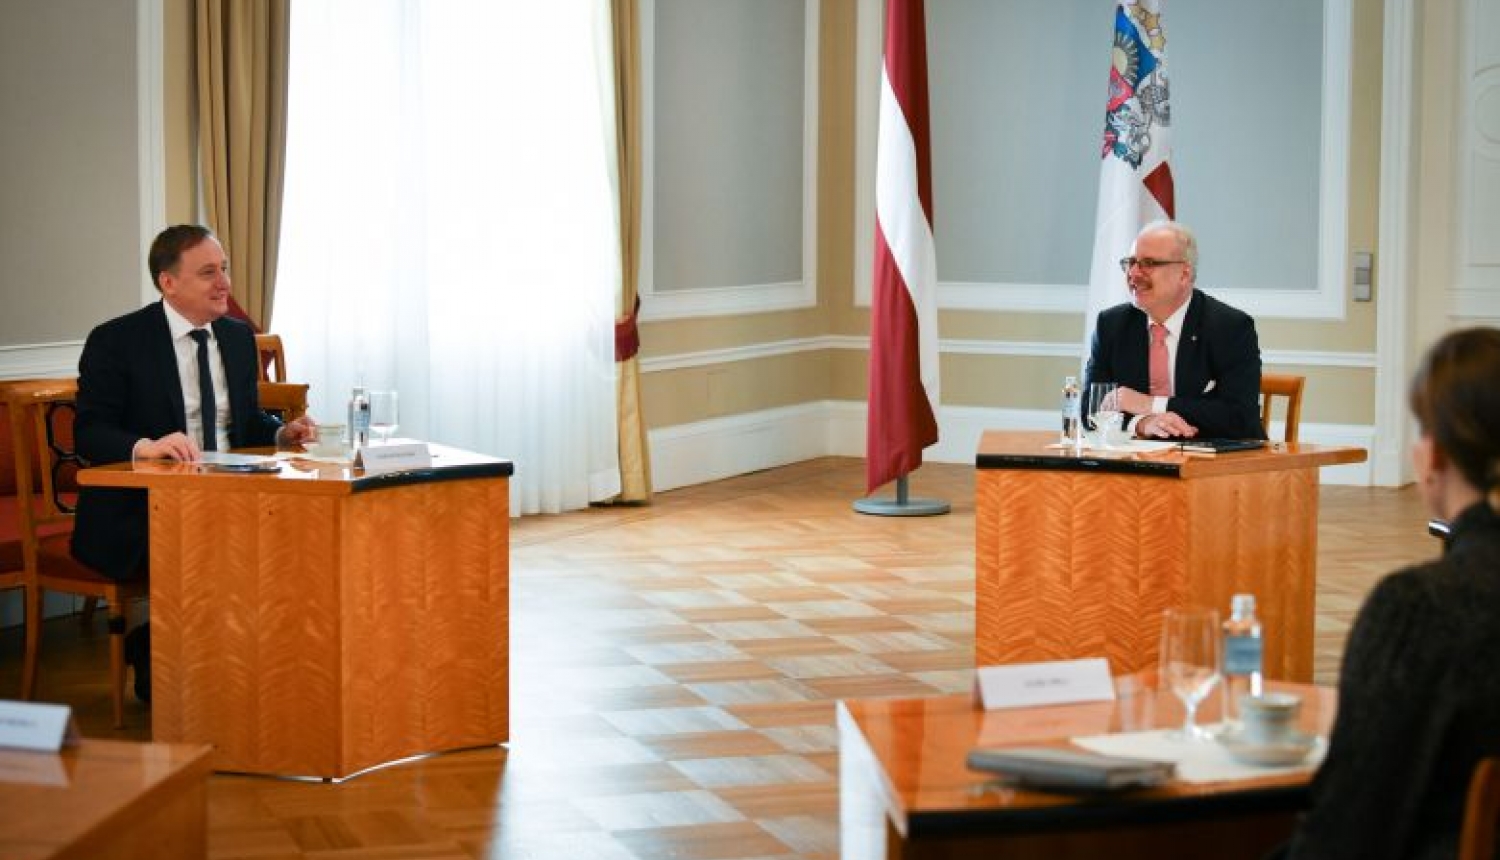 Valsts prezidents un Latvijas Bankas prezidents: krīze ir jāizmanto ilgtspējas un sabiedrības solidaritātes veicināšanai